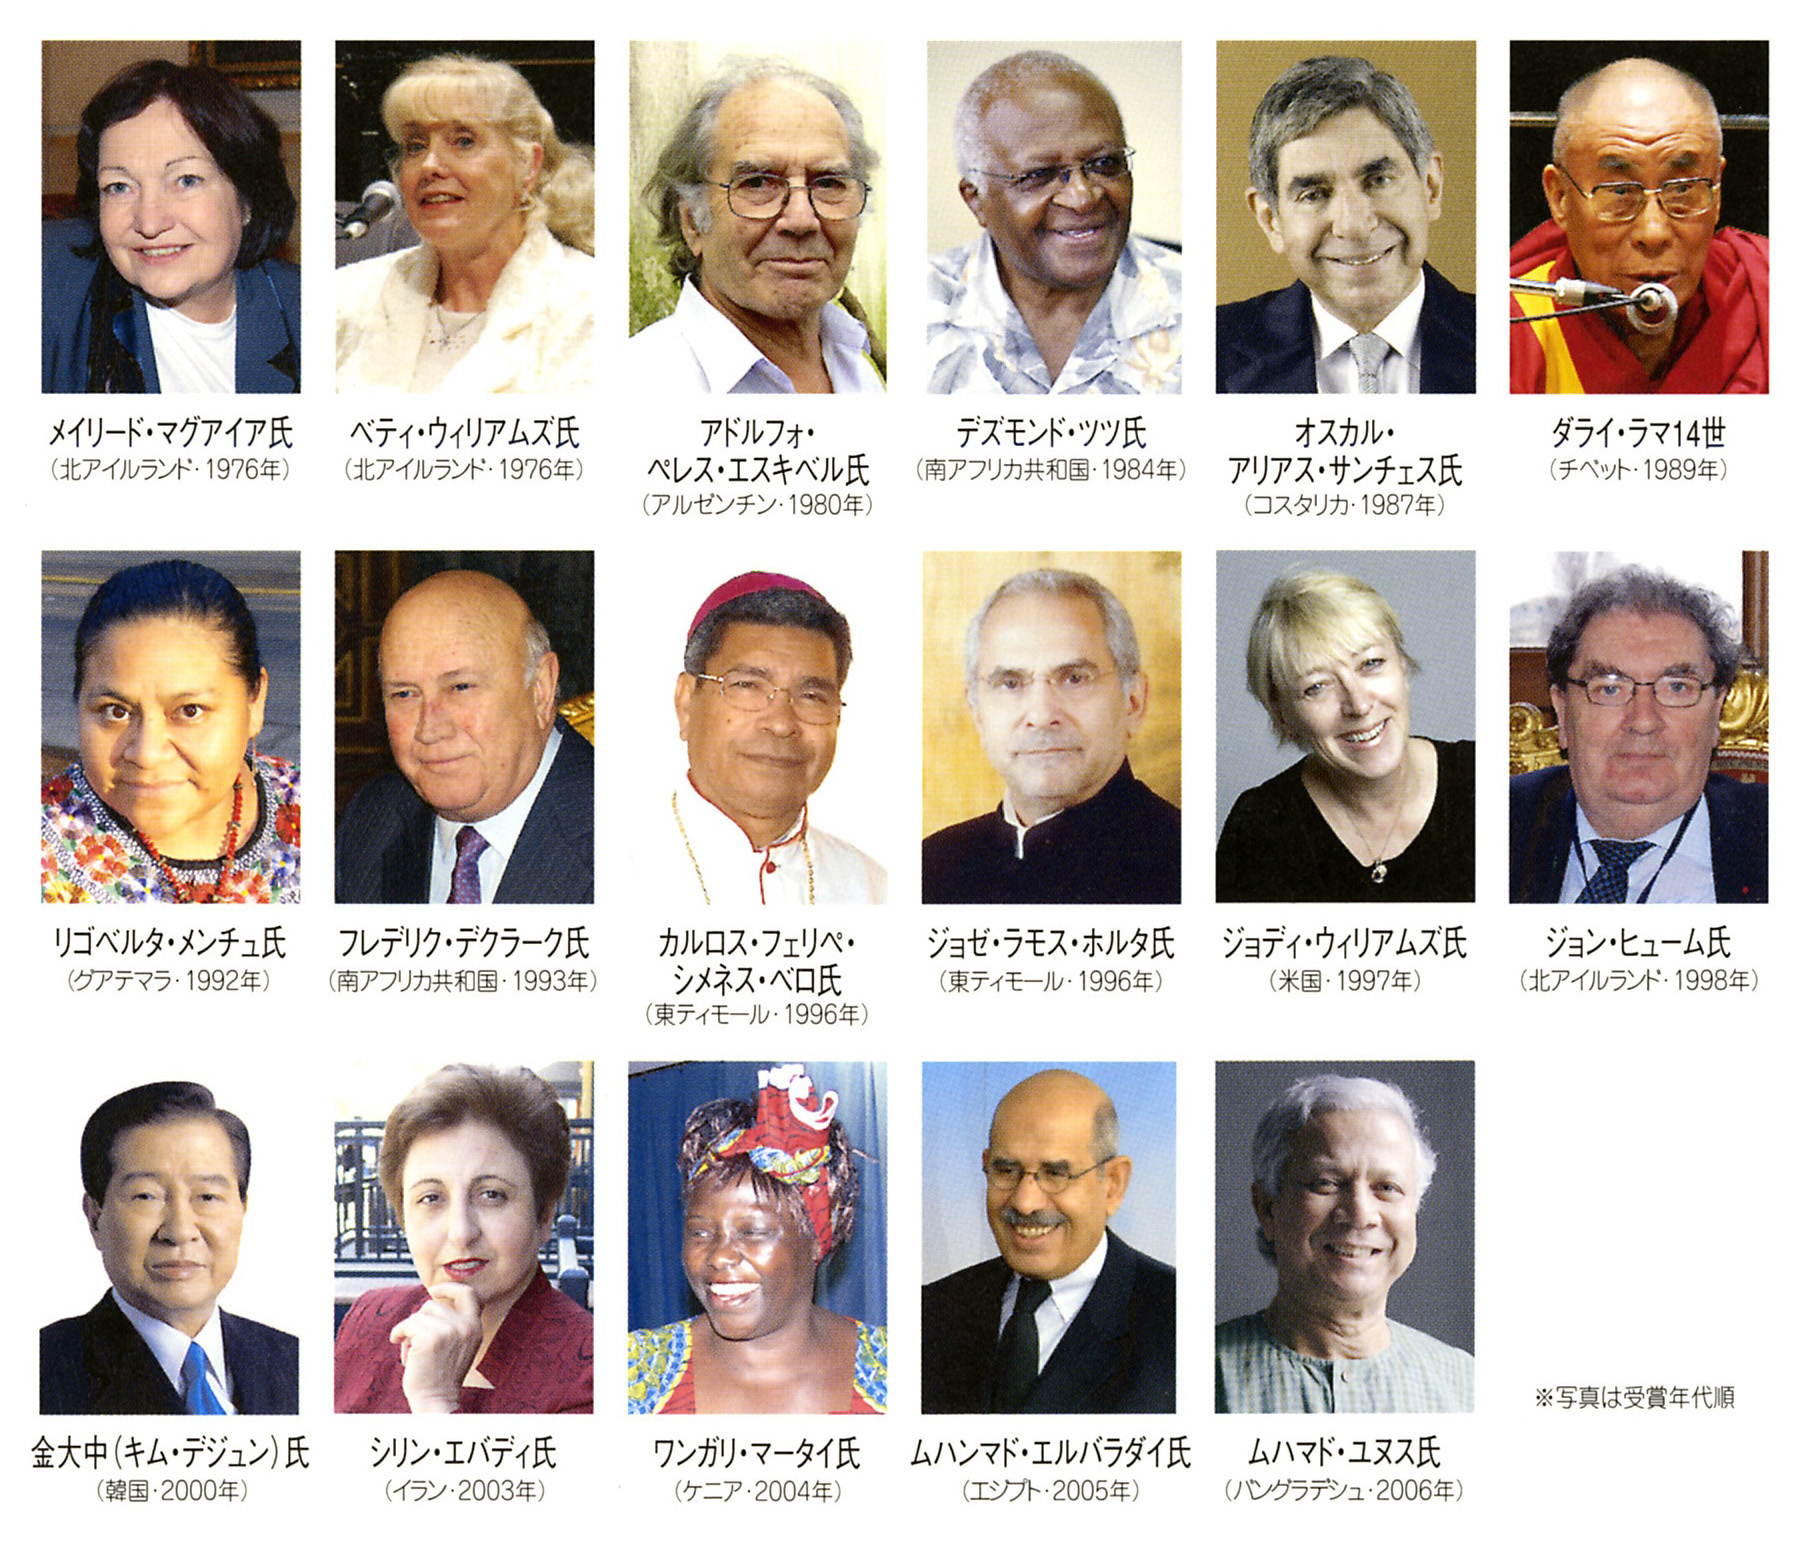 ノーベル平和賞受賞者ヒロシマ ナガサキ宣言